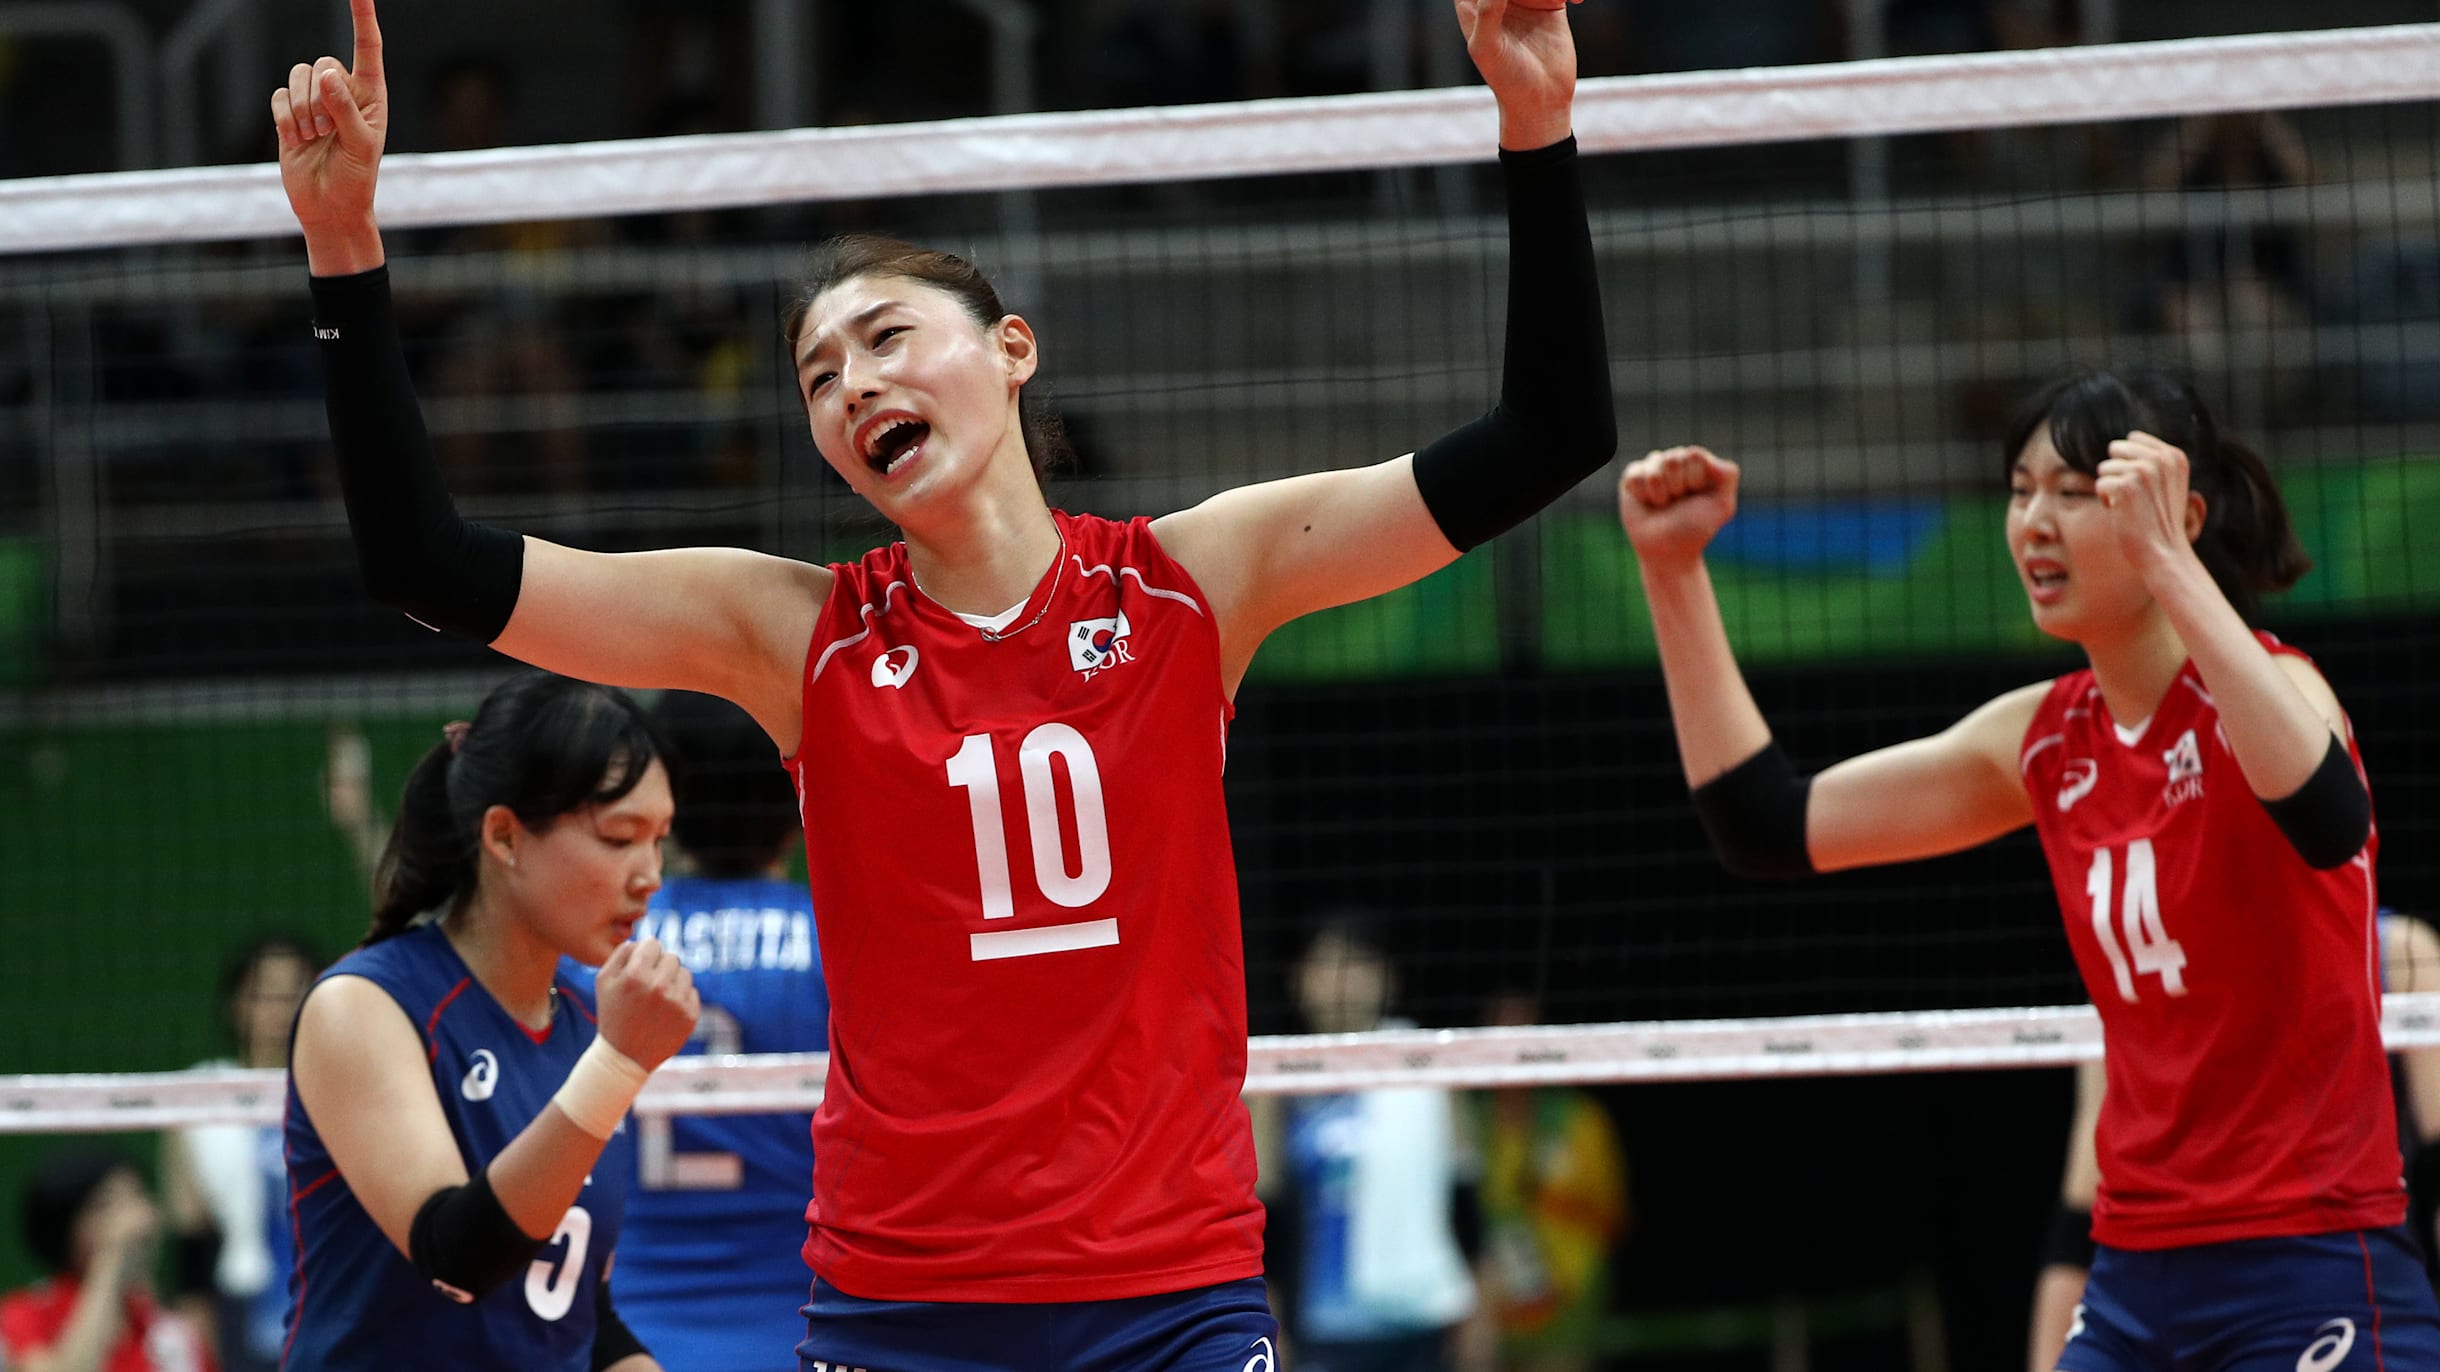 South Koreas Kim Yeon-koung eyes Olympic dream